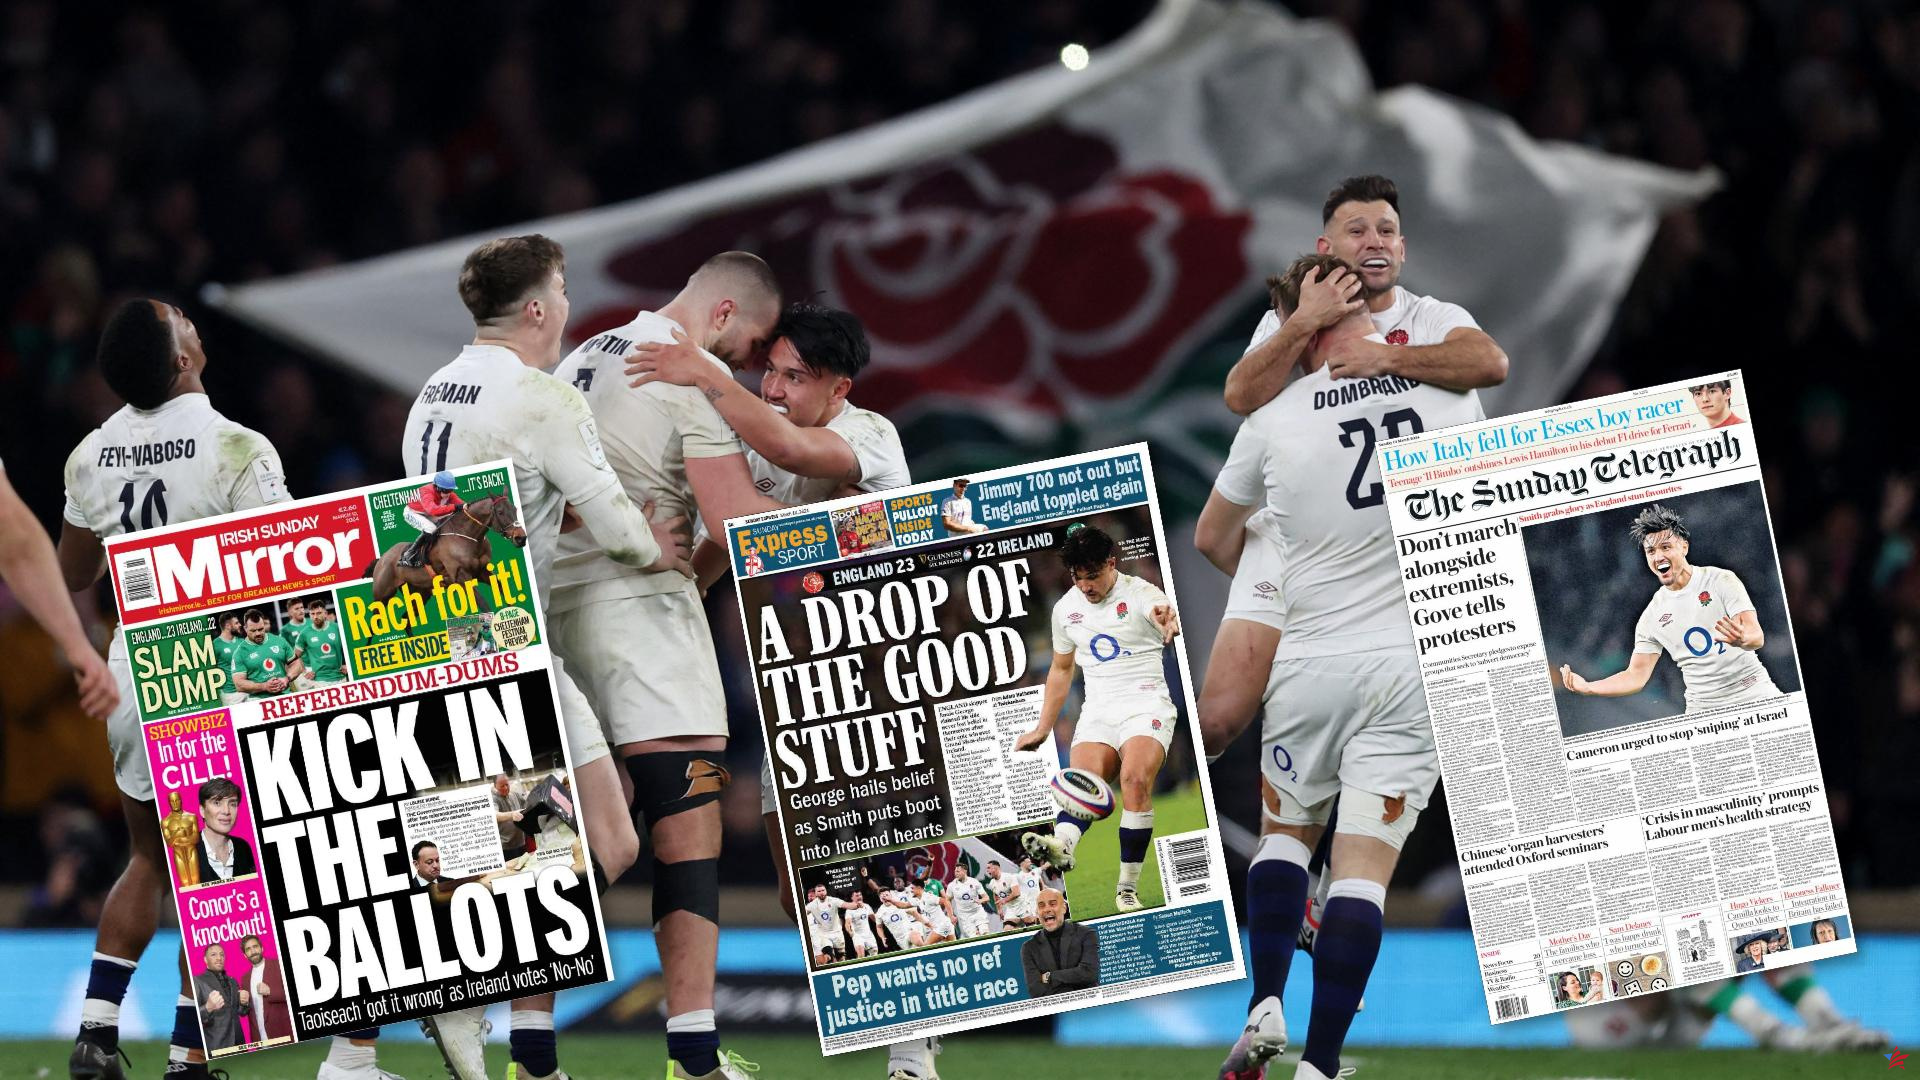 Seis Naciones: “¿Rugby o sexo? Al final está muy igualado”, se emociona la prensa inglesa tras el sublime Inglaterra-Irlanda